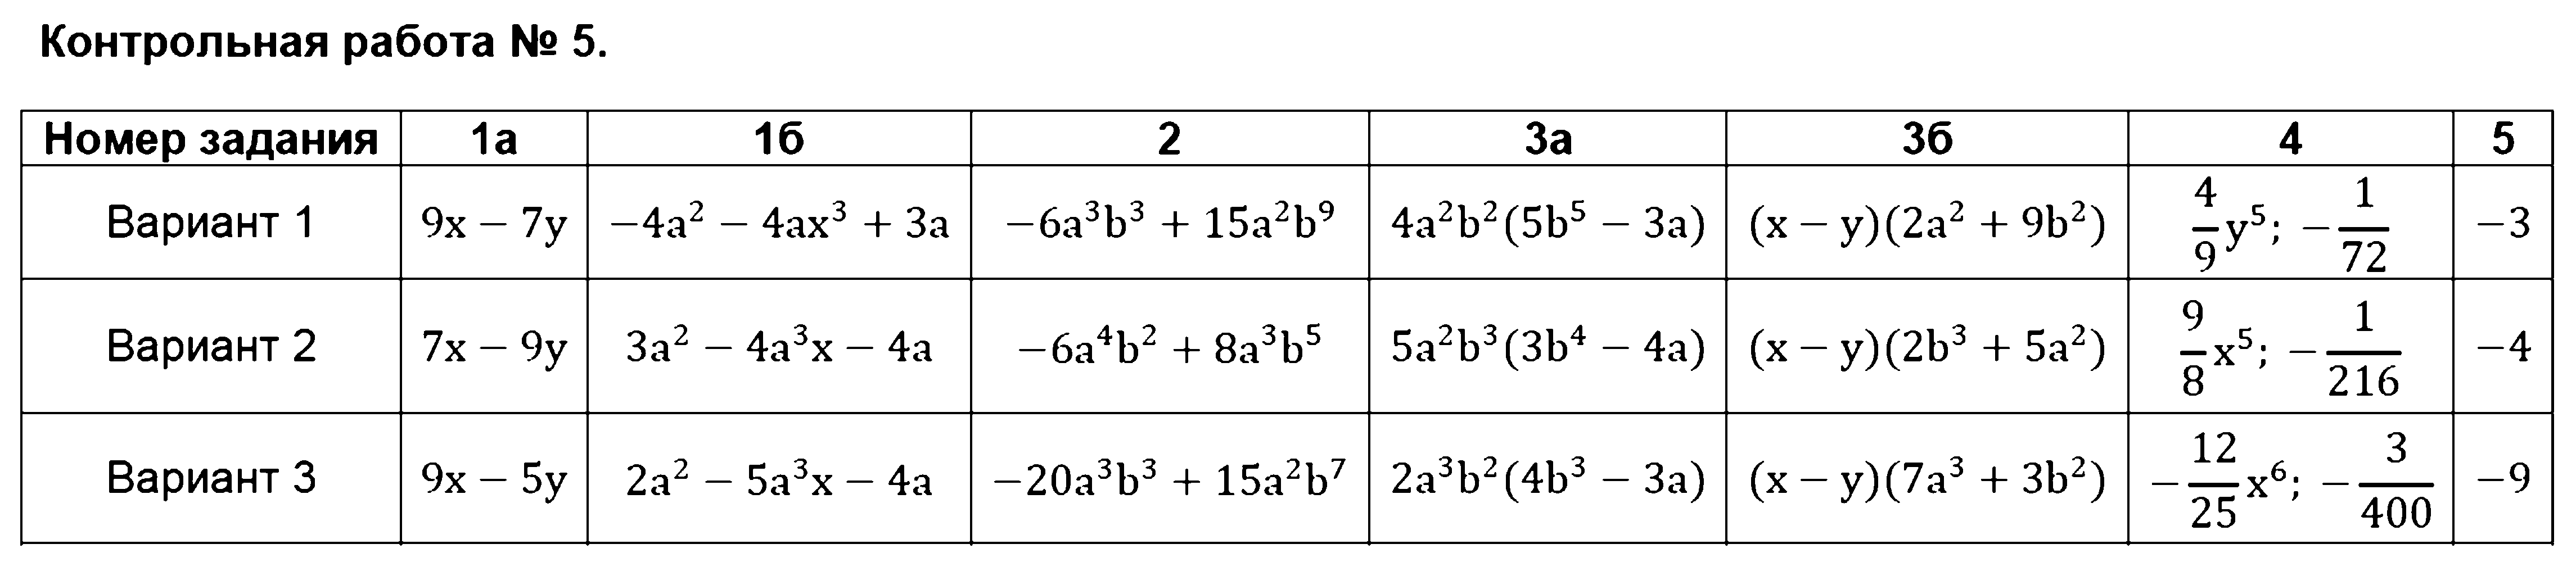 ГДЗ Алгебра 7 класс - Контрольная работа №5